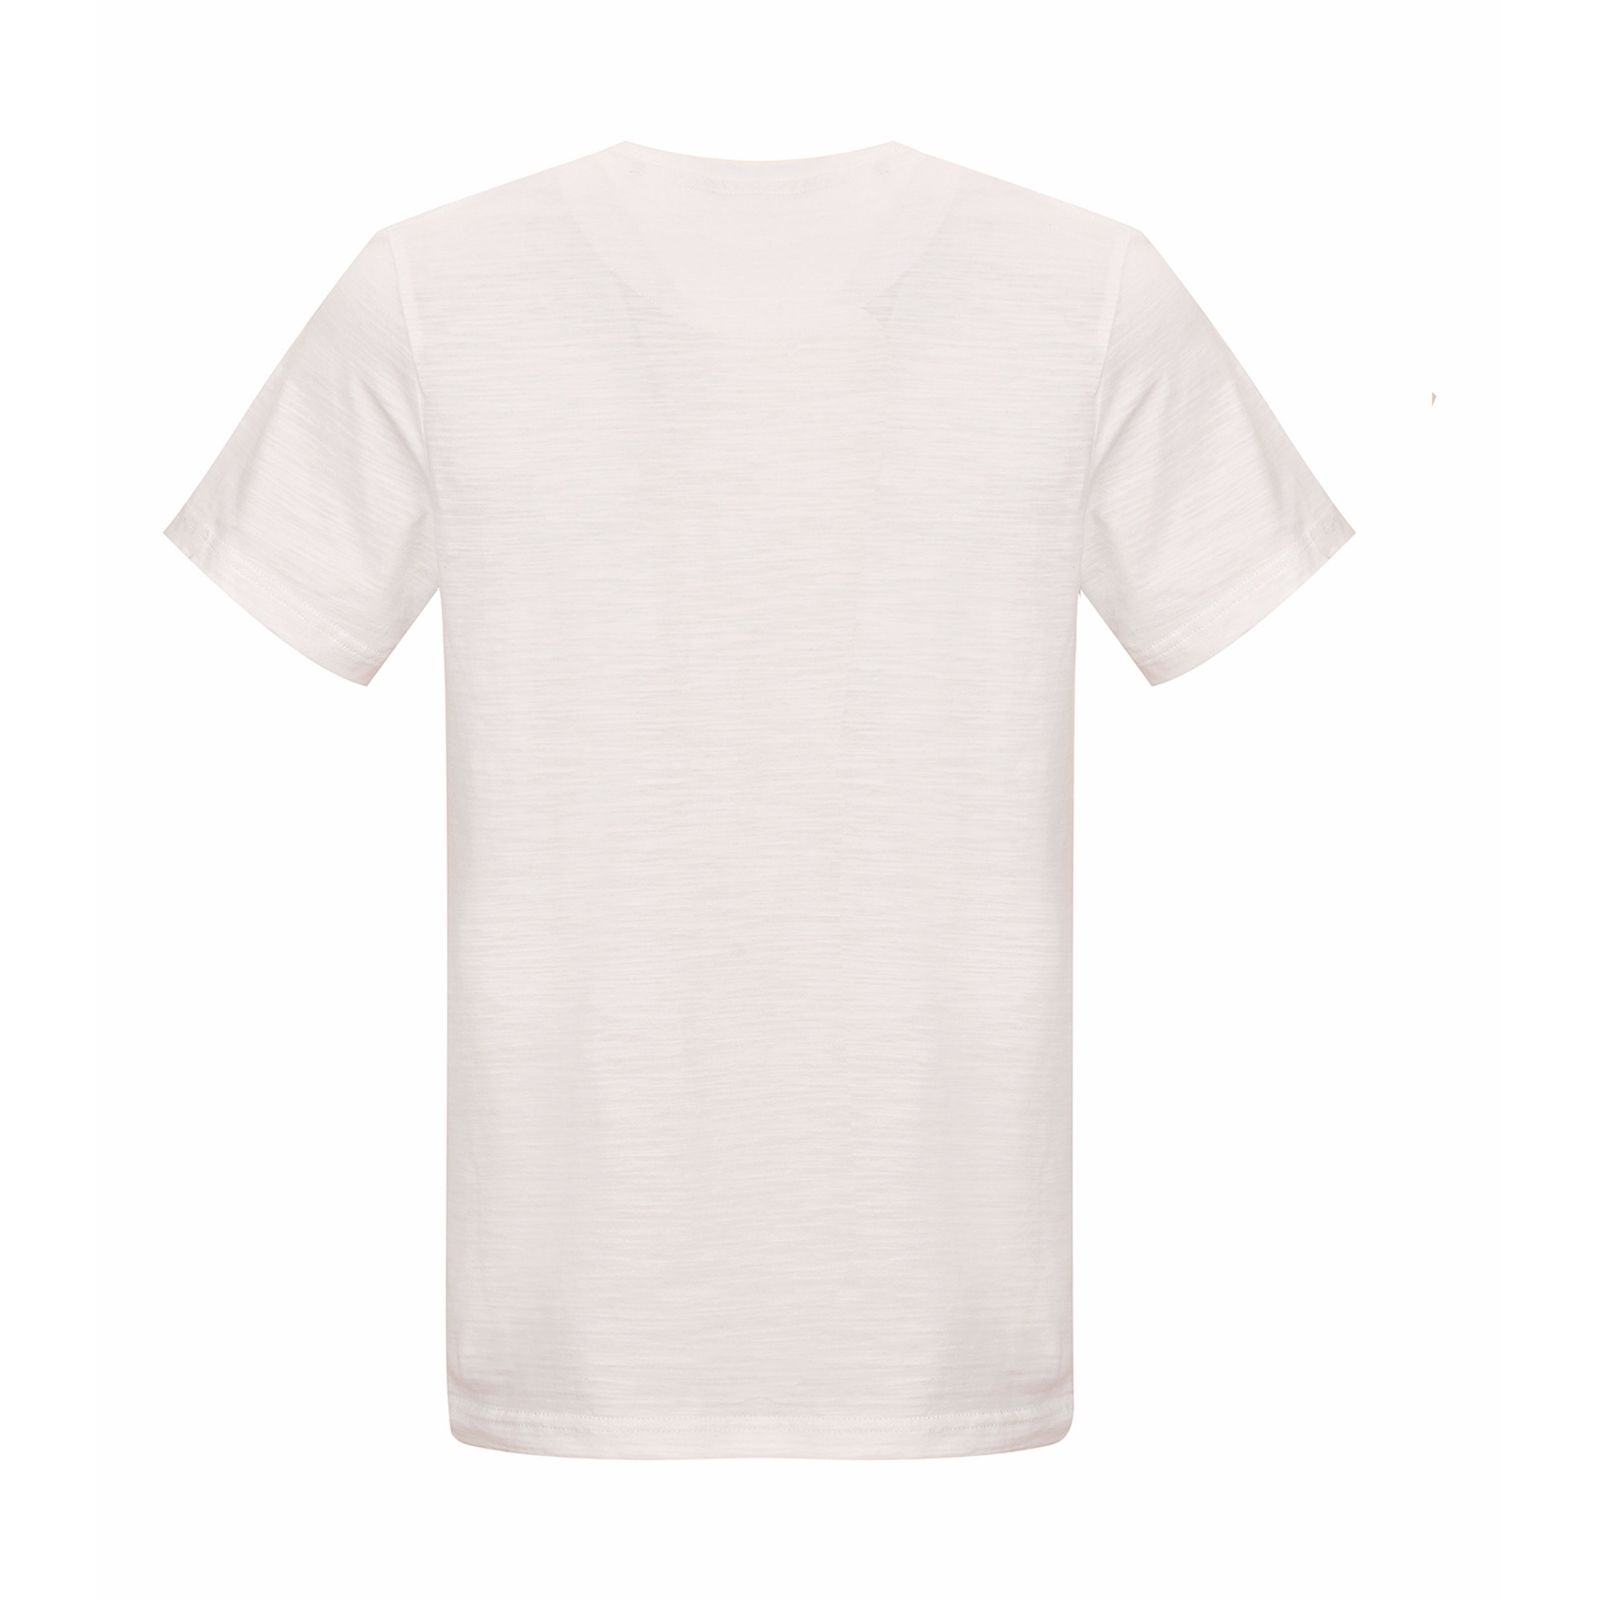 تی شرت آستین کوتاه مردانه بادی اسپینر مدل 3432 کد 1 رنگ سفید -  - 2